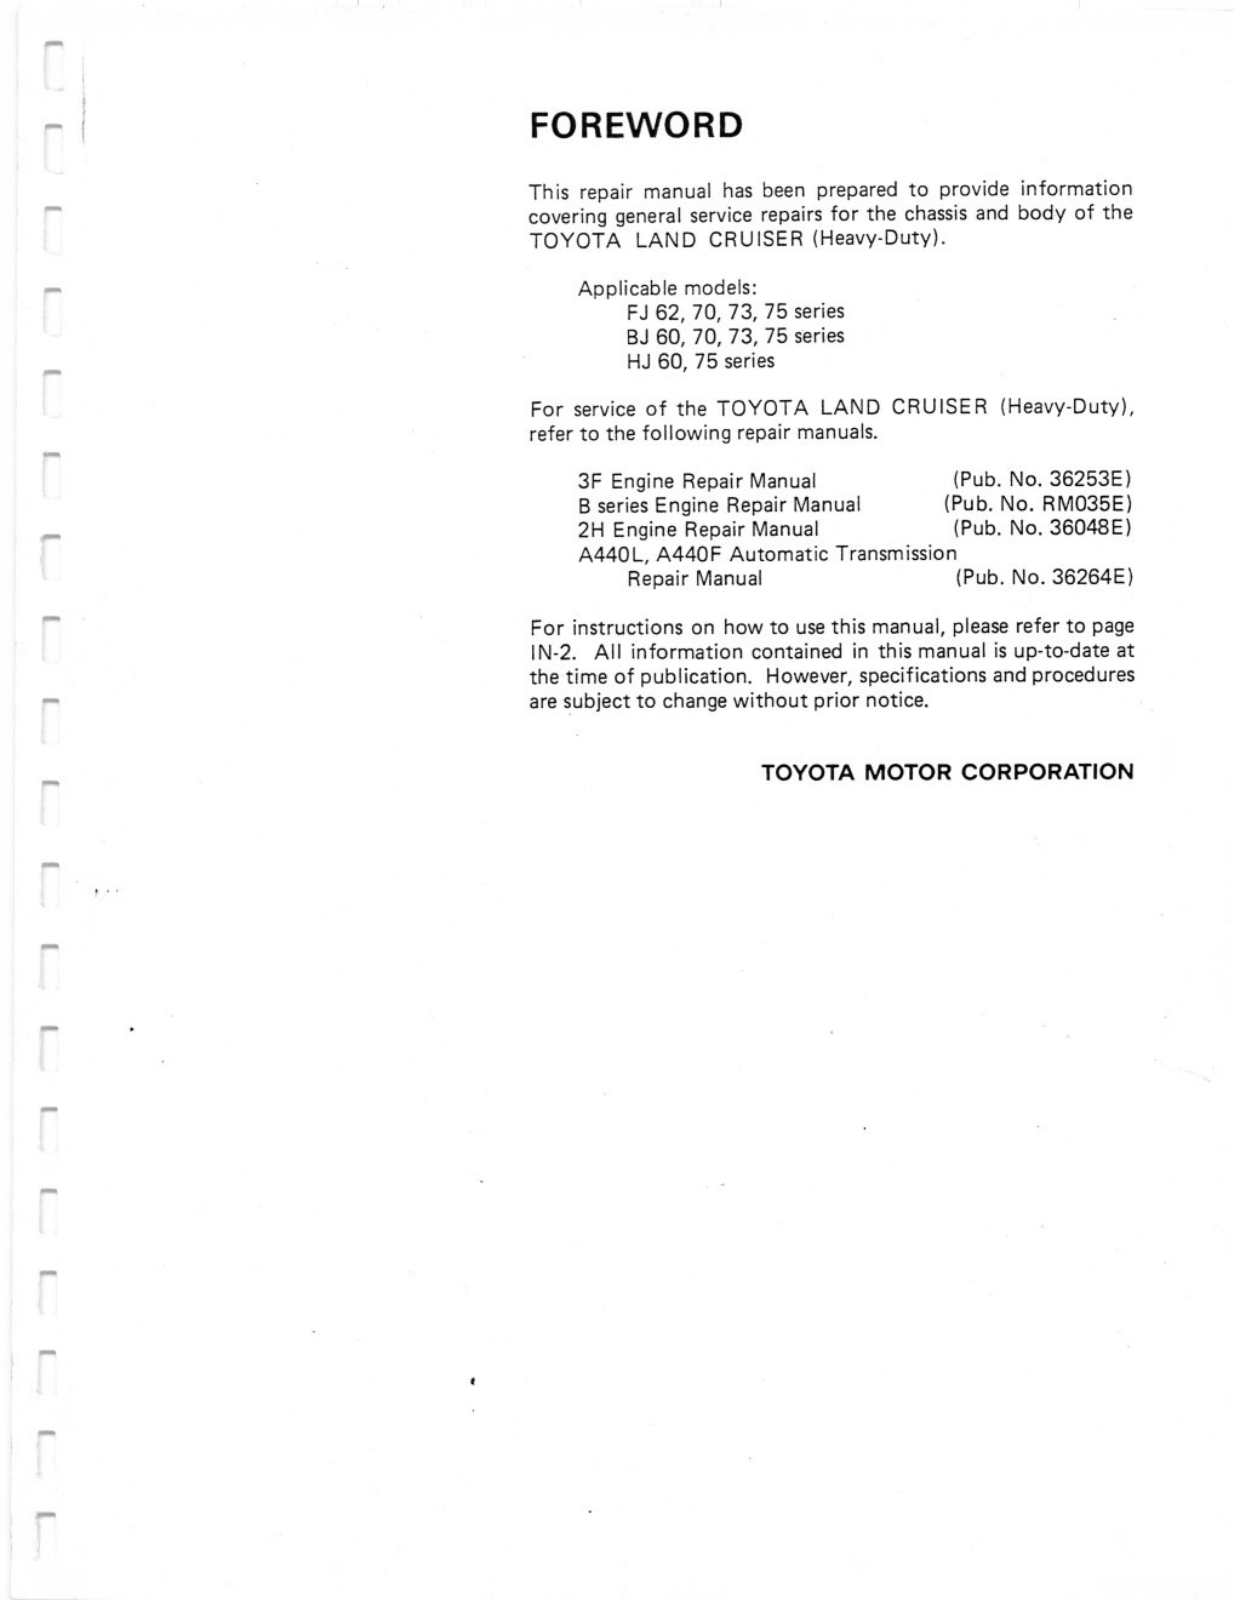 Toyota LAND CRUISER 1994 User Manual